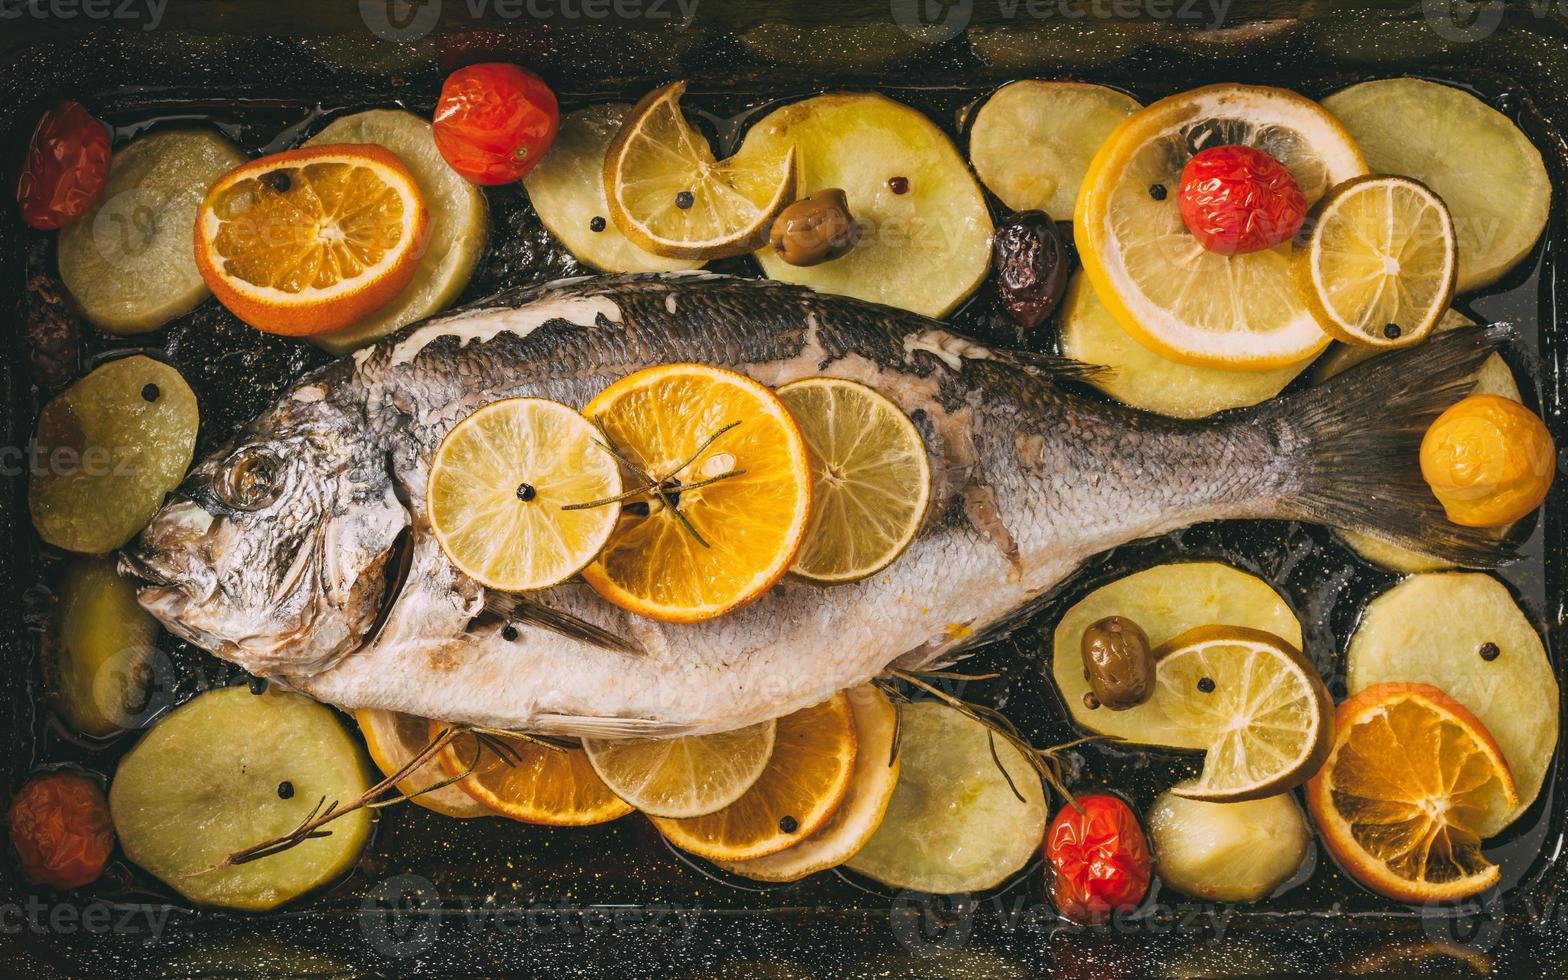 orata pesce in teglia al forno con patate, rosmarino, limone, arancia, olive, pomodori, cipolla e lime. orata fresca, preparazione di pesce dorade. foto